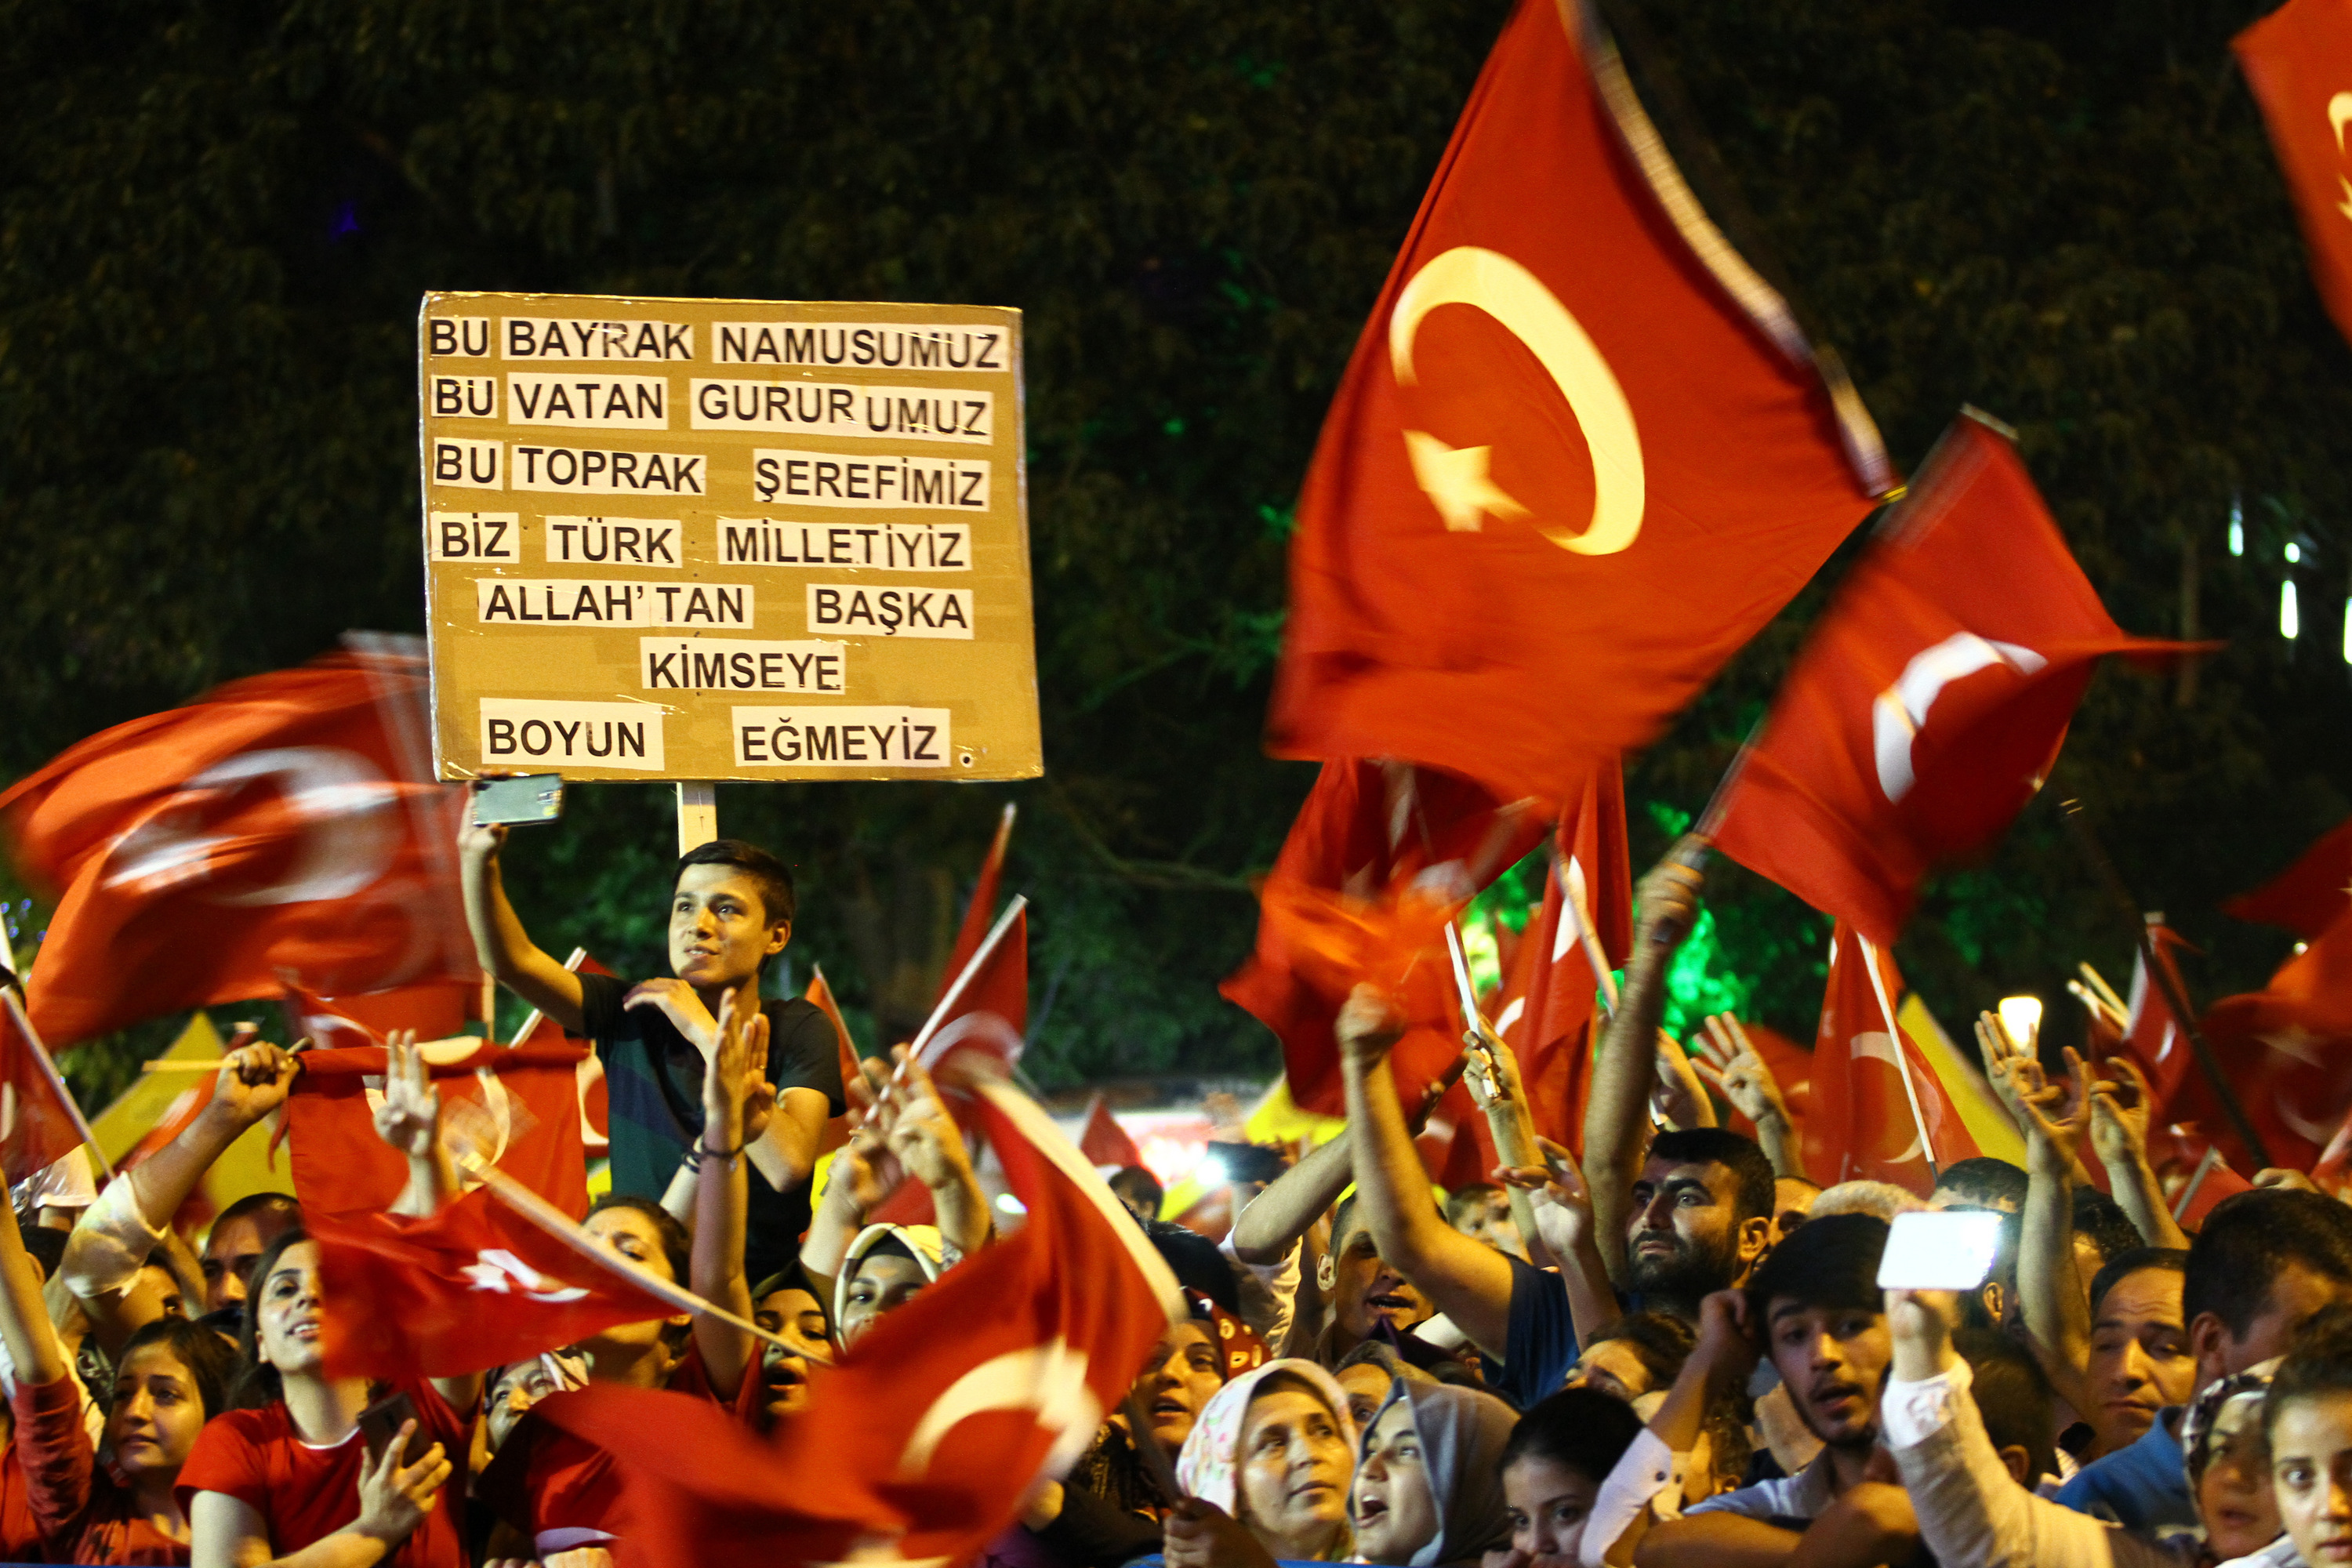 Demokrasi nöbetlerine katılan vatandaşlar hazırladıkları pankartlar ile tepkilerini dile getirdi.